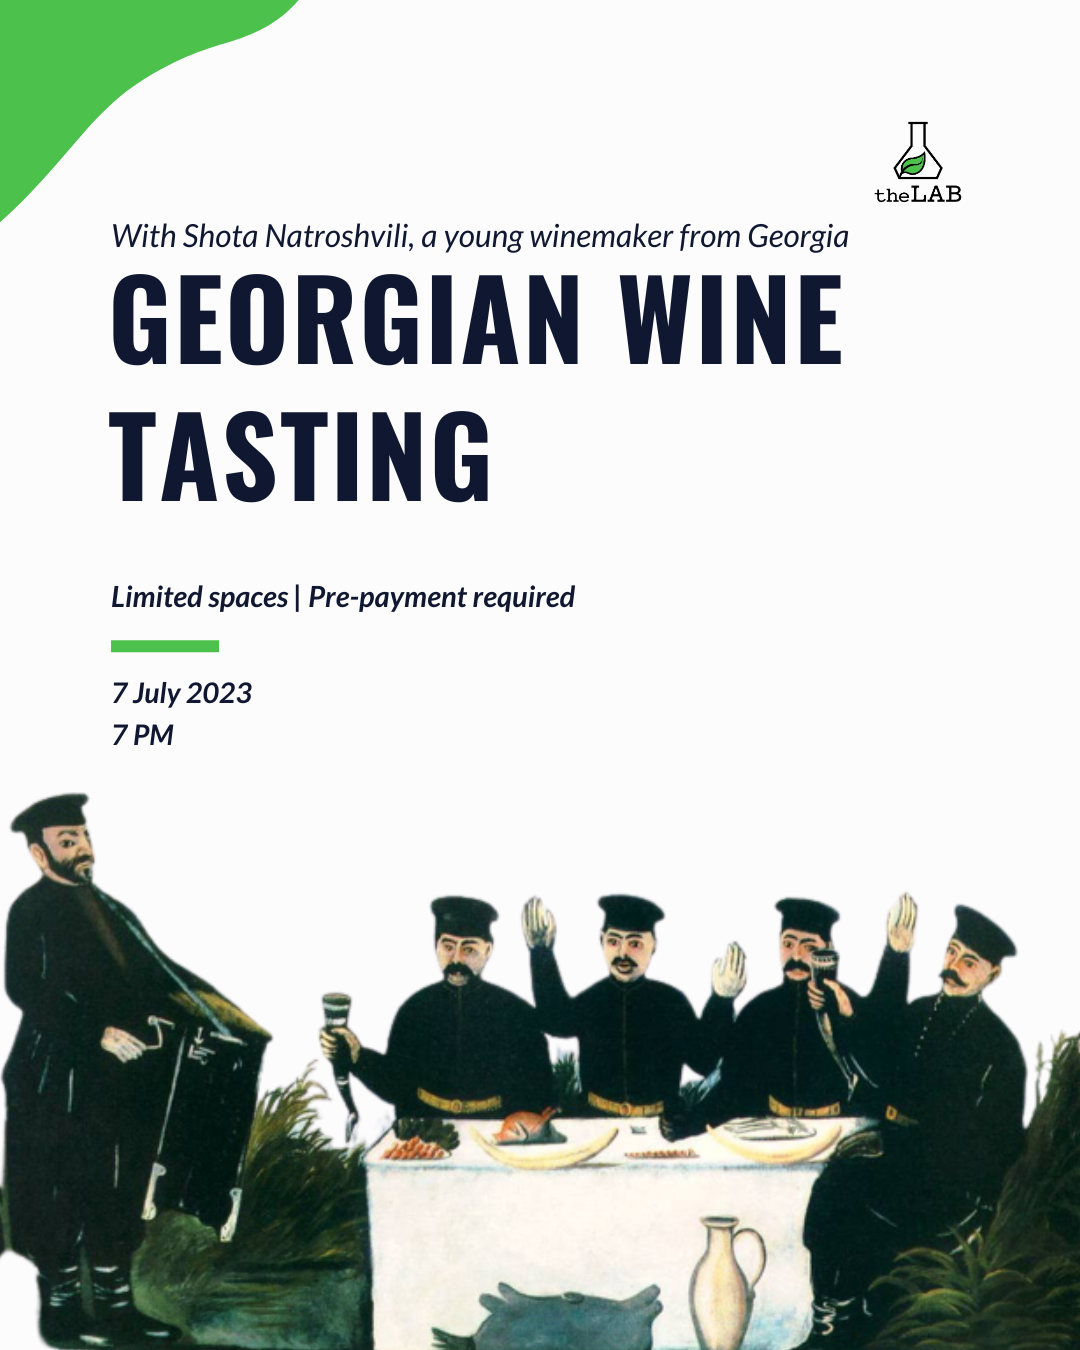 Georgian Wine Tasting @theLAB